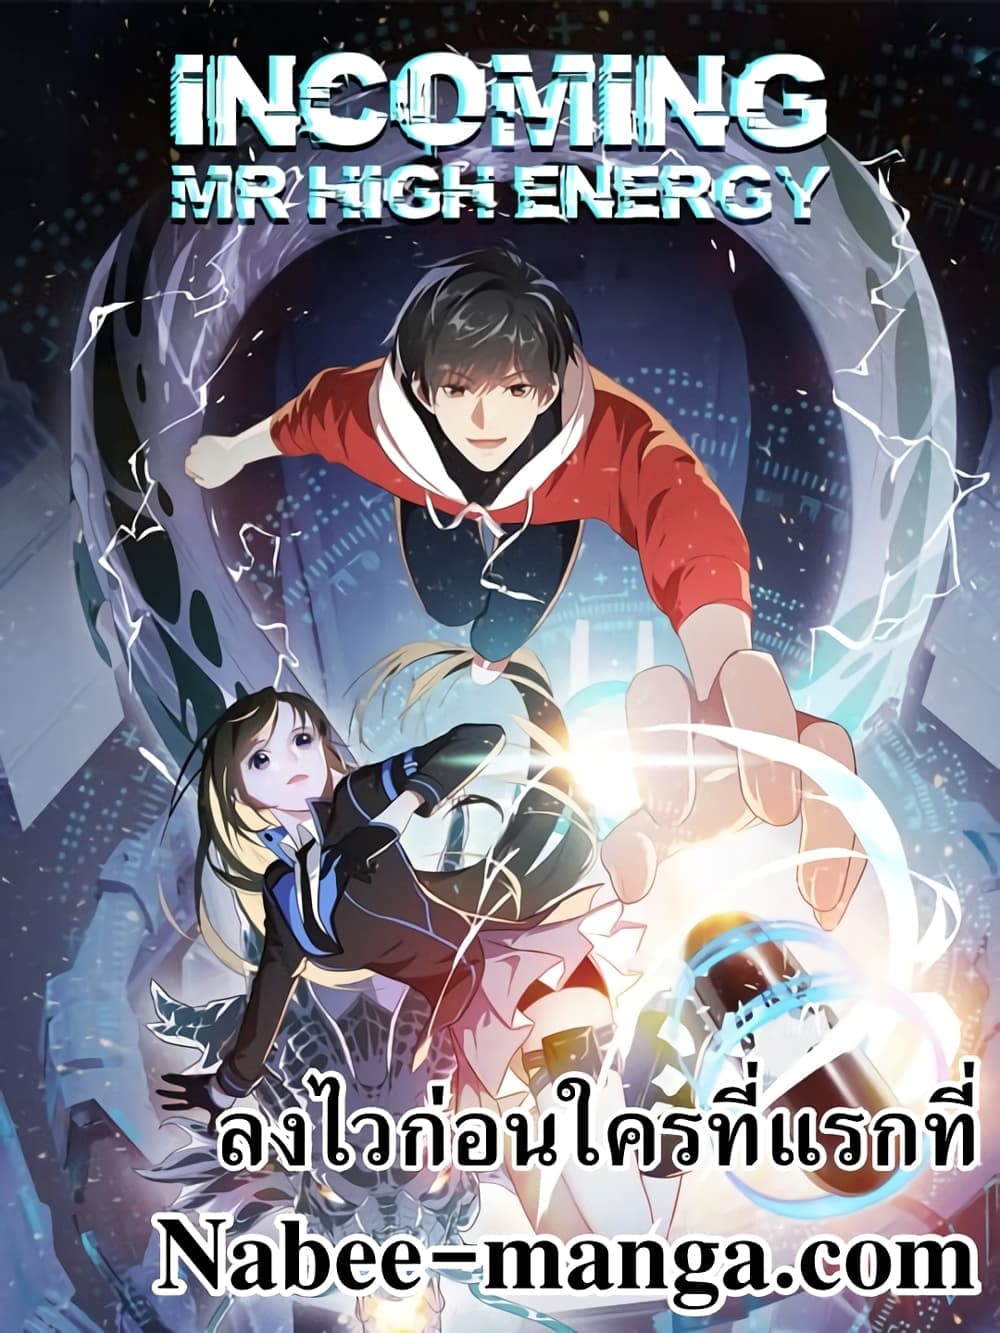 High Energy Strikes 183-183